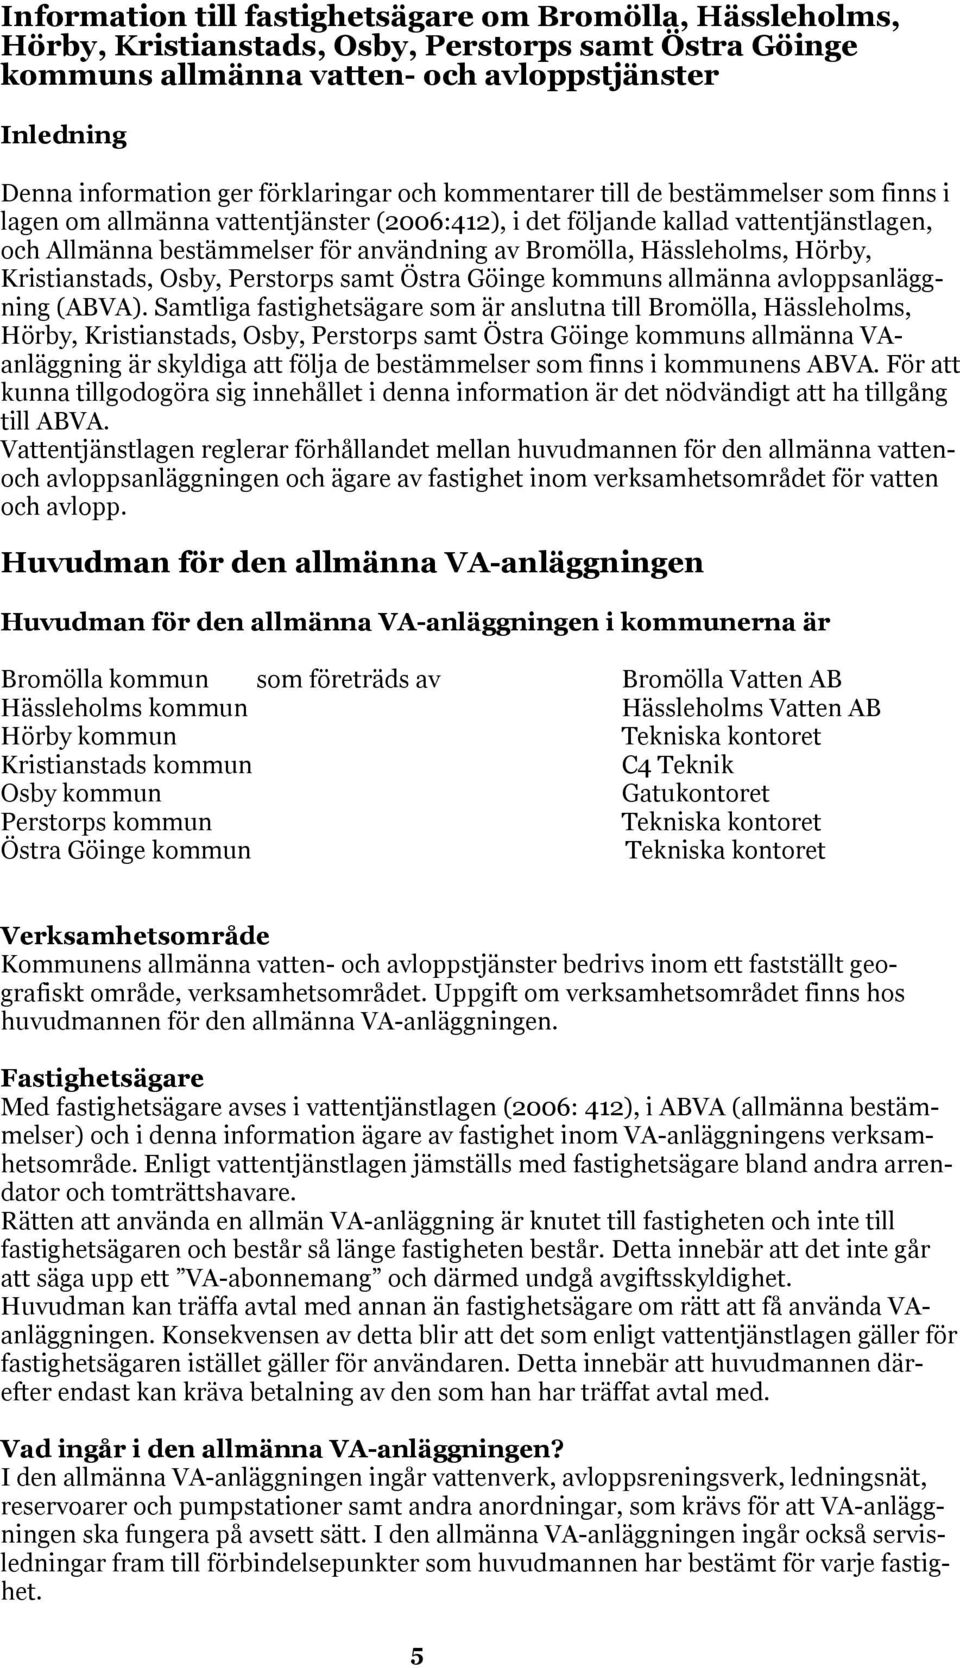 Bromölla, Hässleholms, Hörby, Kristianstads, Osby, Perstorps samt Östra Göinge kommuns allmänna avloppsanläggning (ABVA).